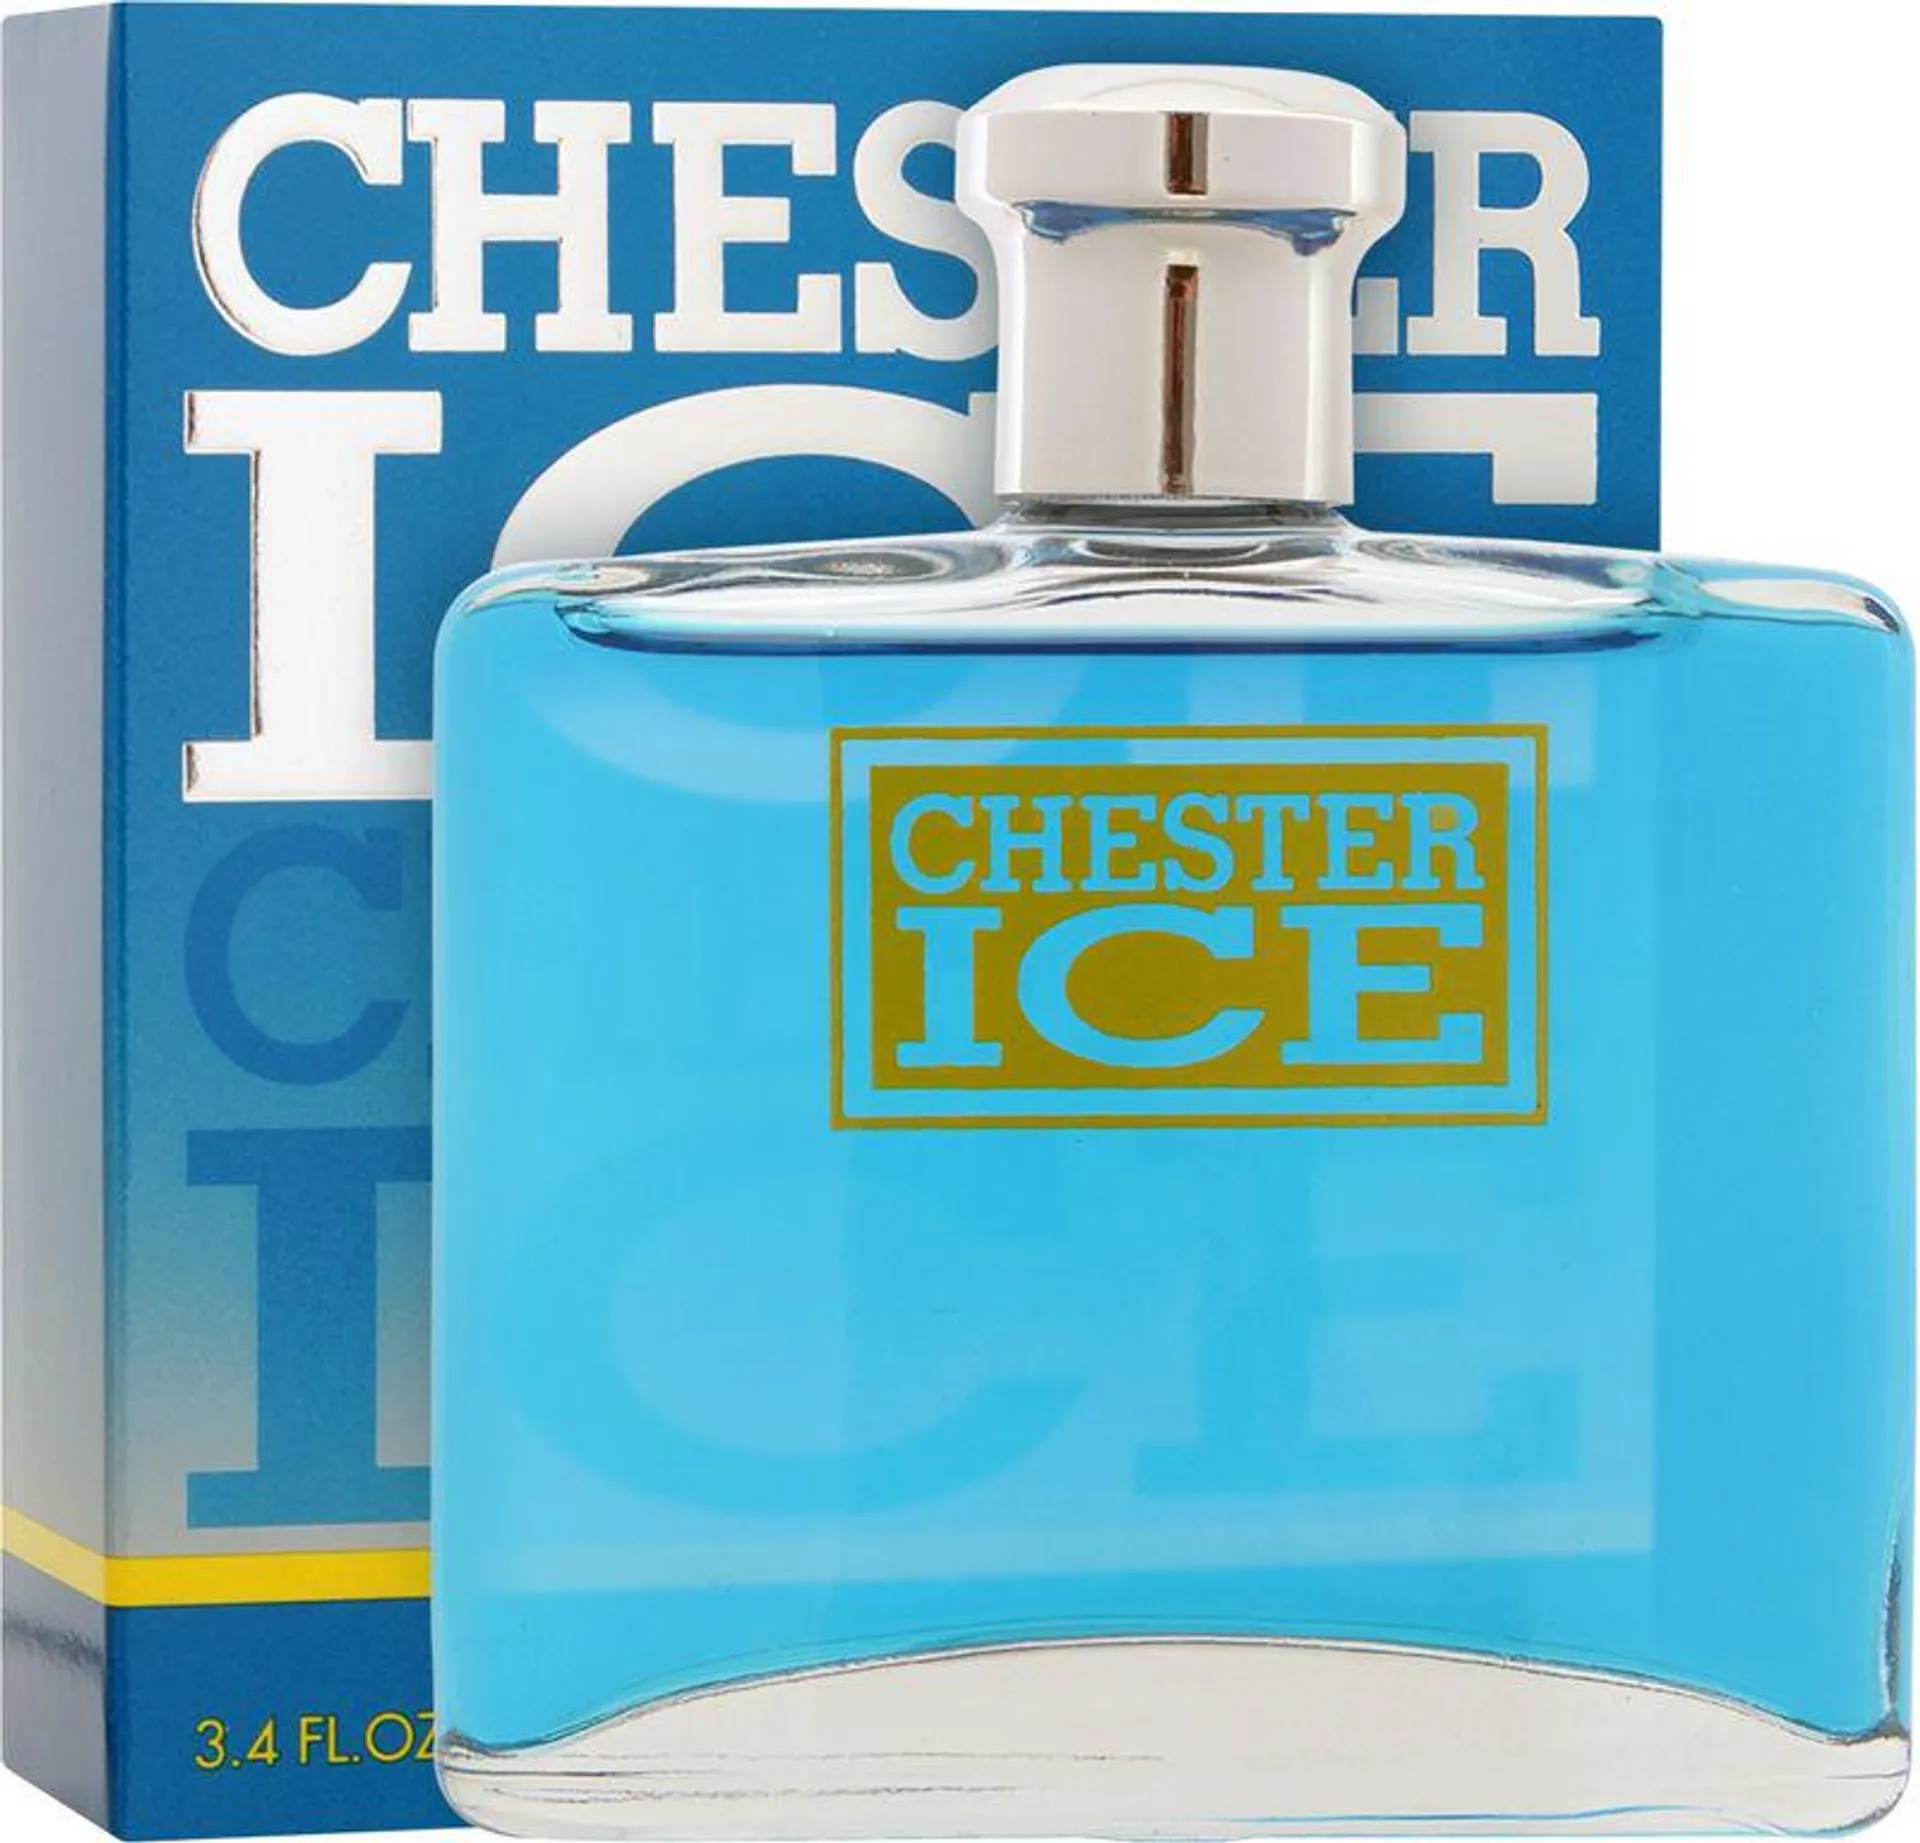 EDT Chester Ice x 100 ml